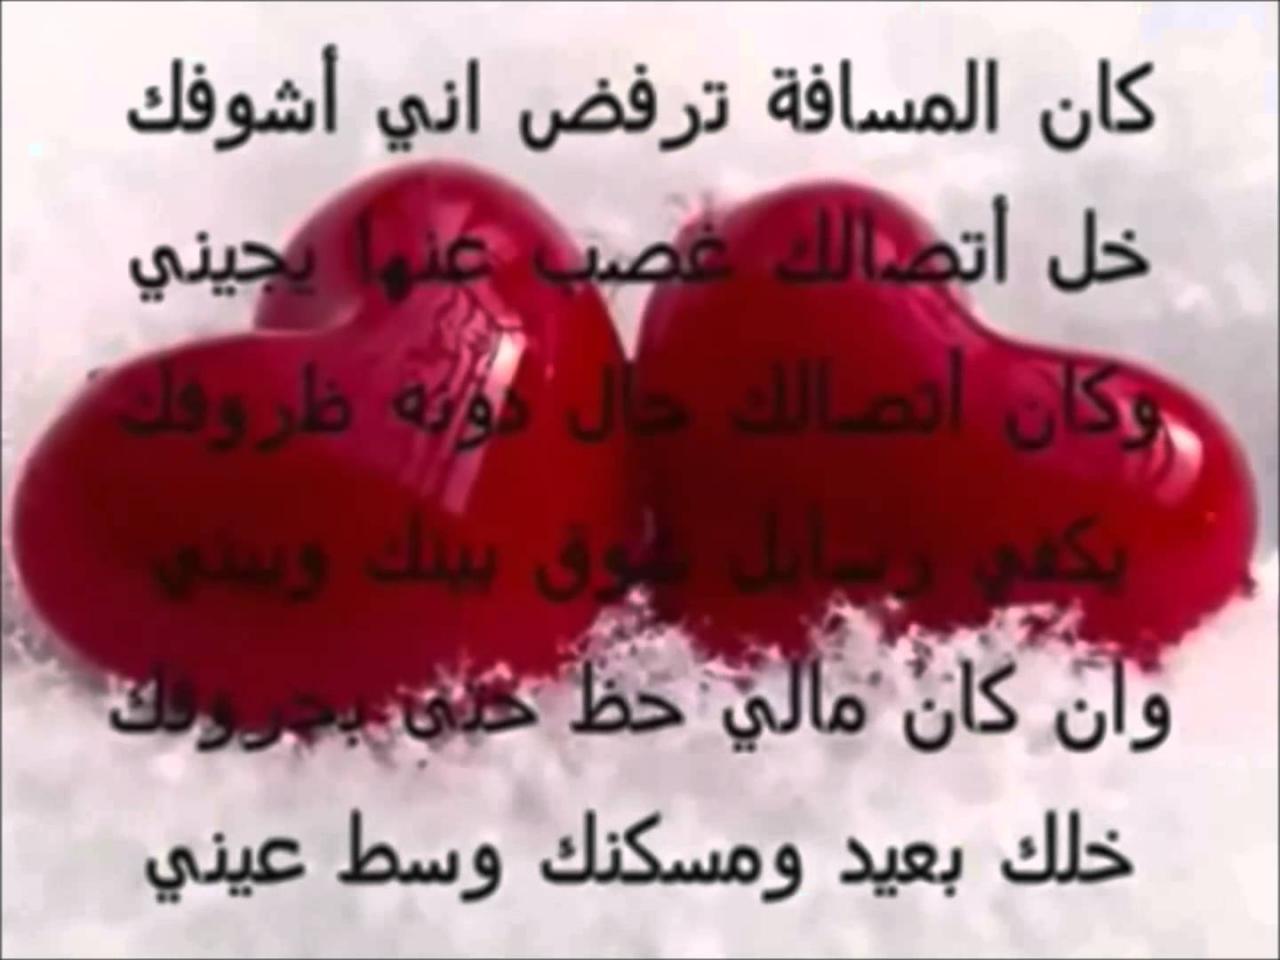 1998 3 تحميل رسائل حب وغرام شيماء